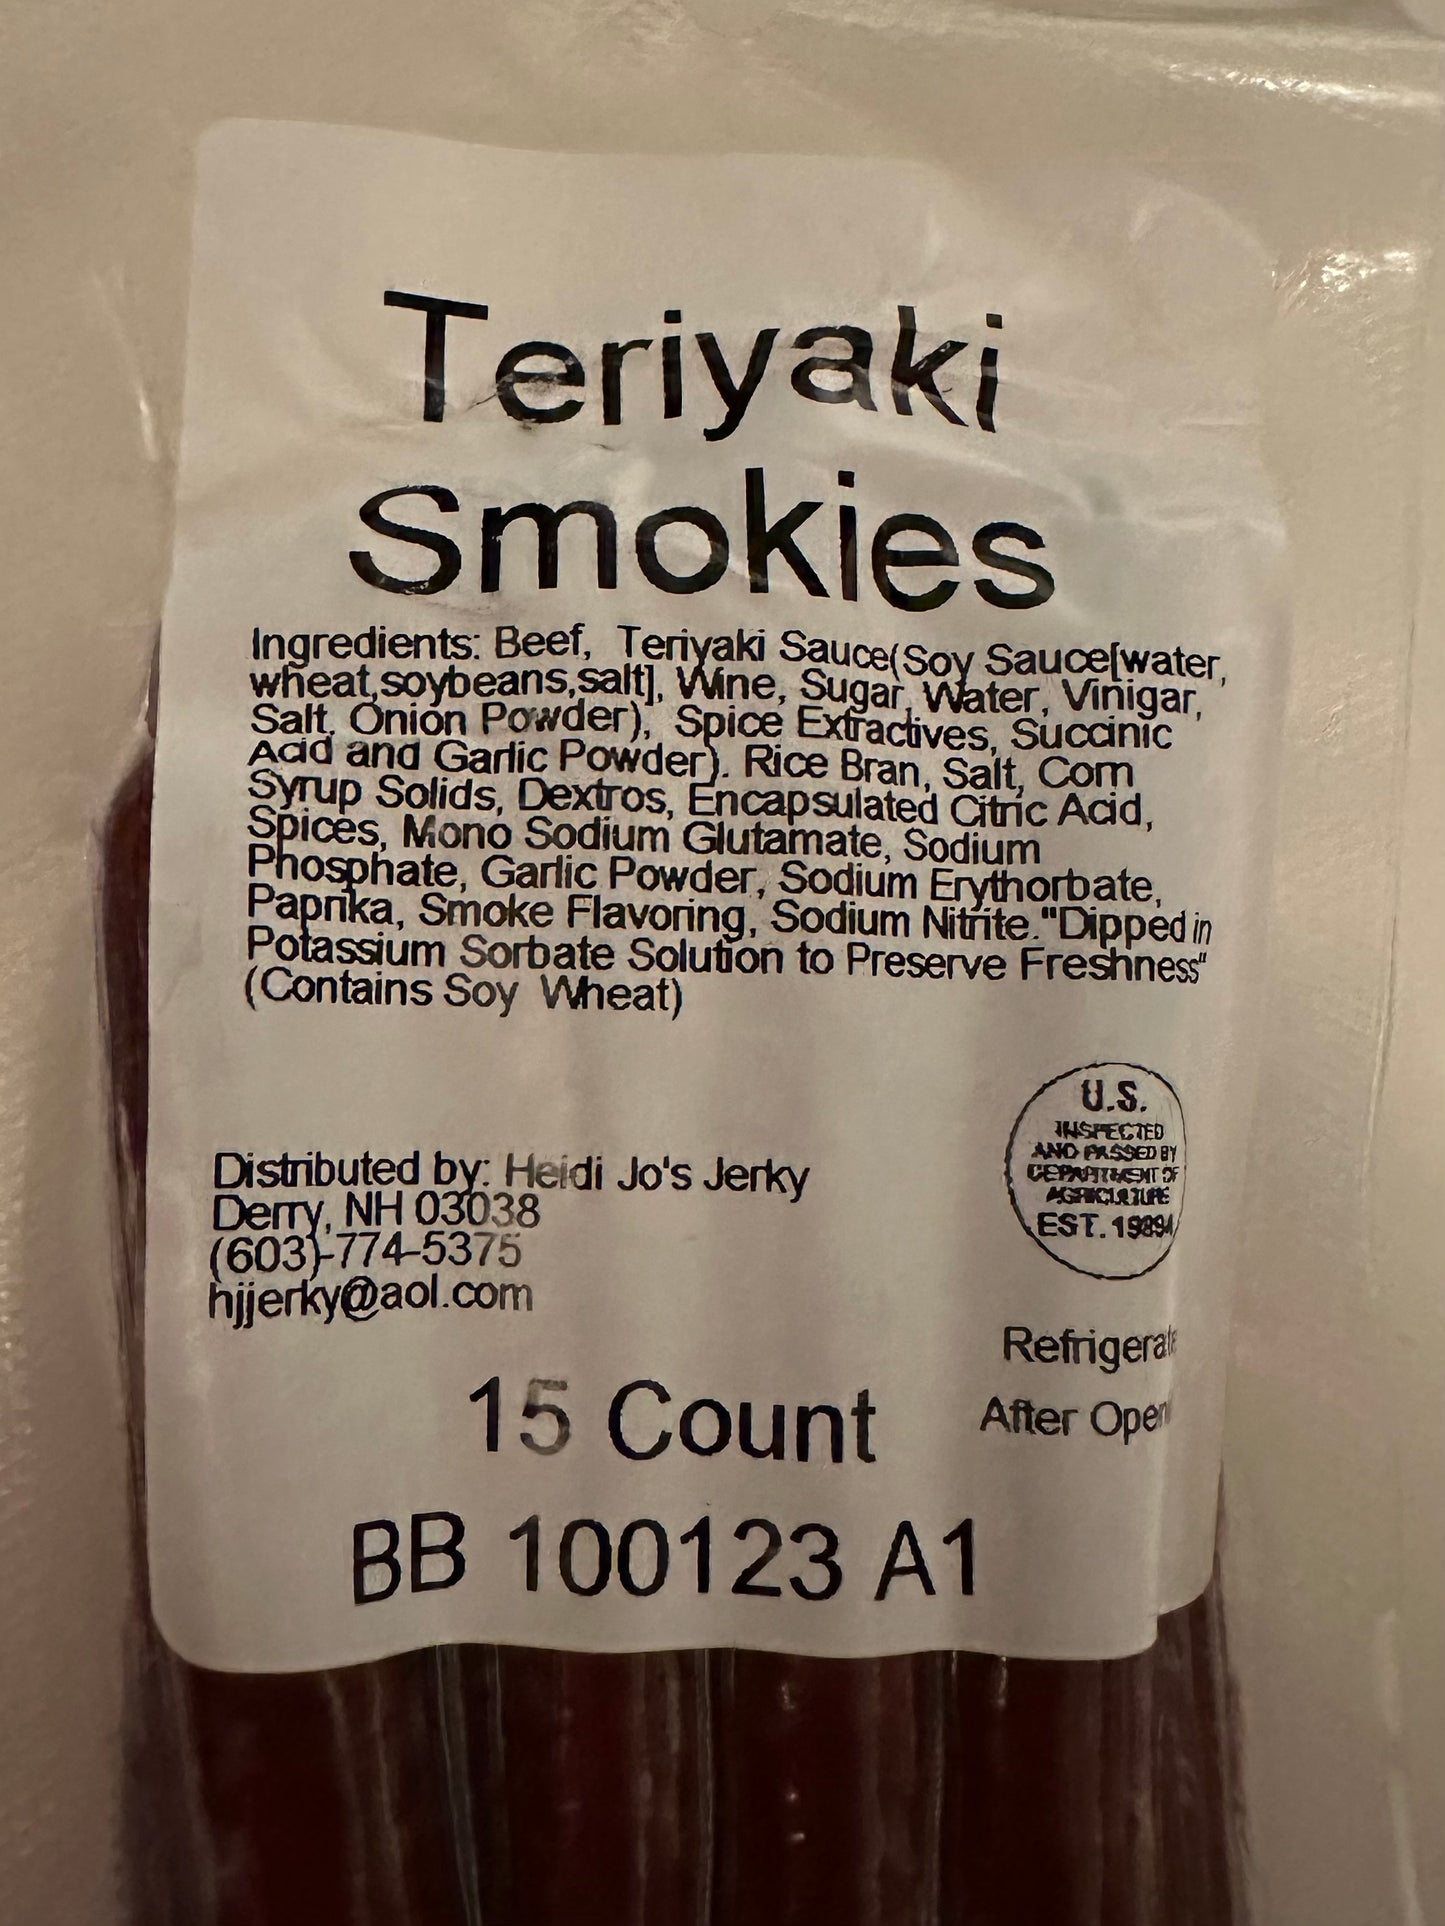 Teriyaki Beef Sticks